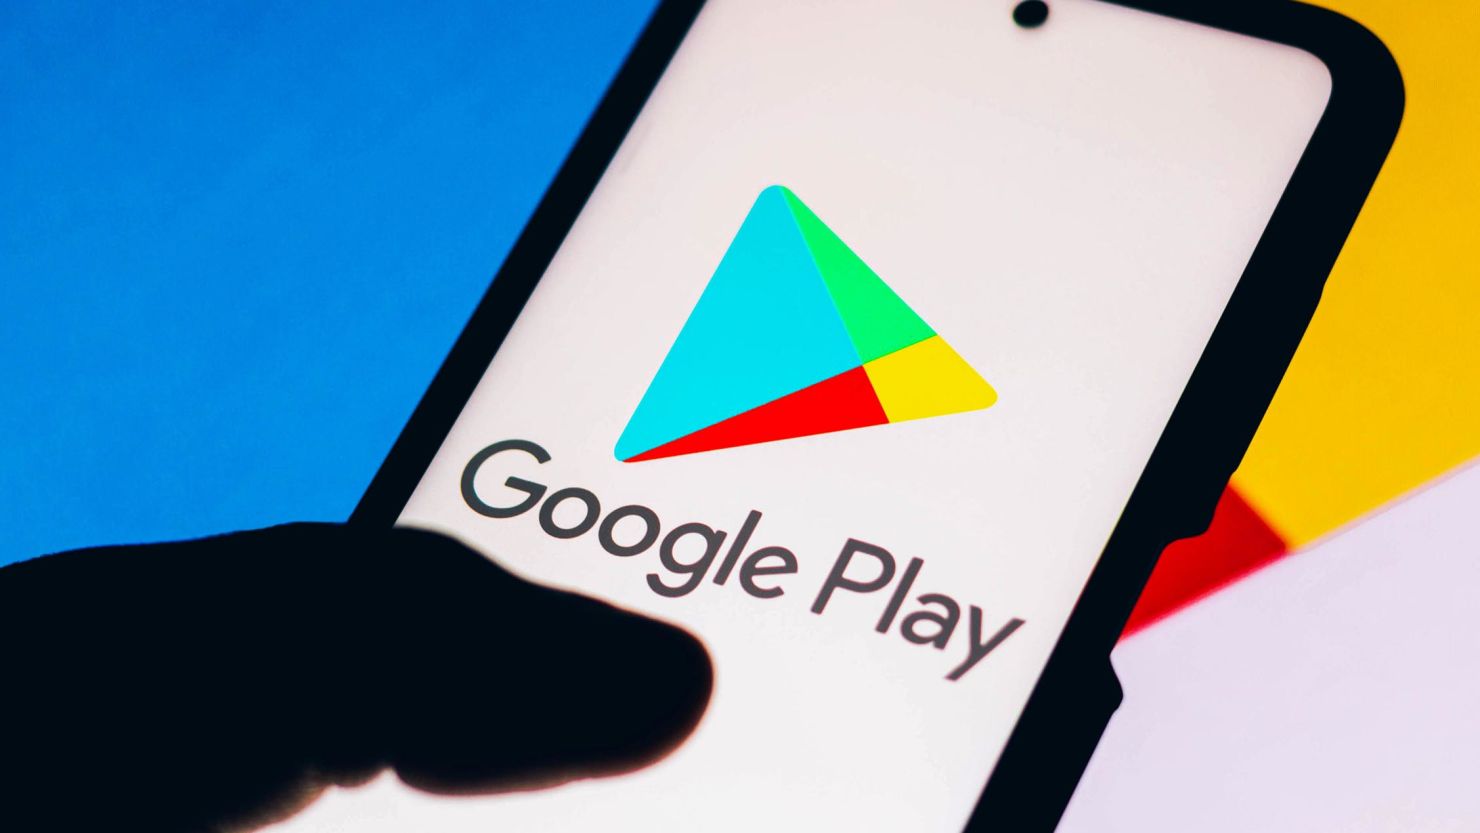 Google Play introduserer en ny funksjon for å identifisere offisielle myndighetsapper